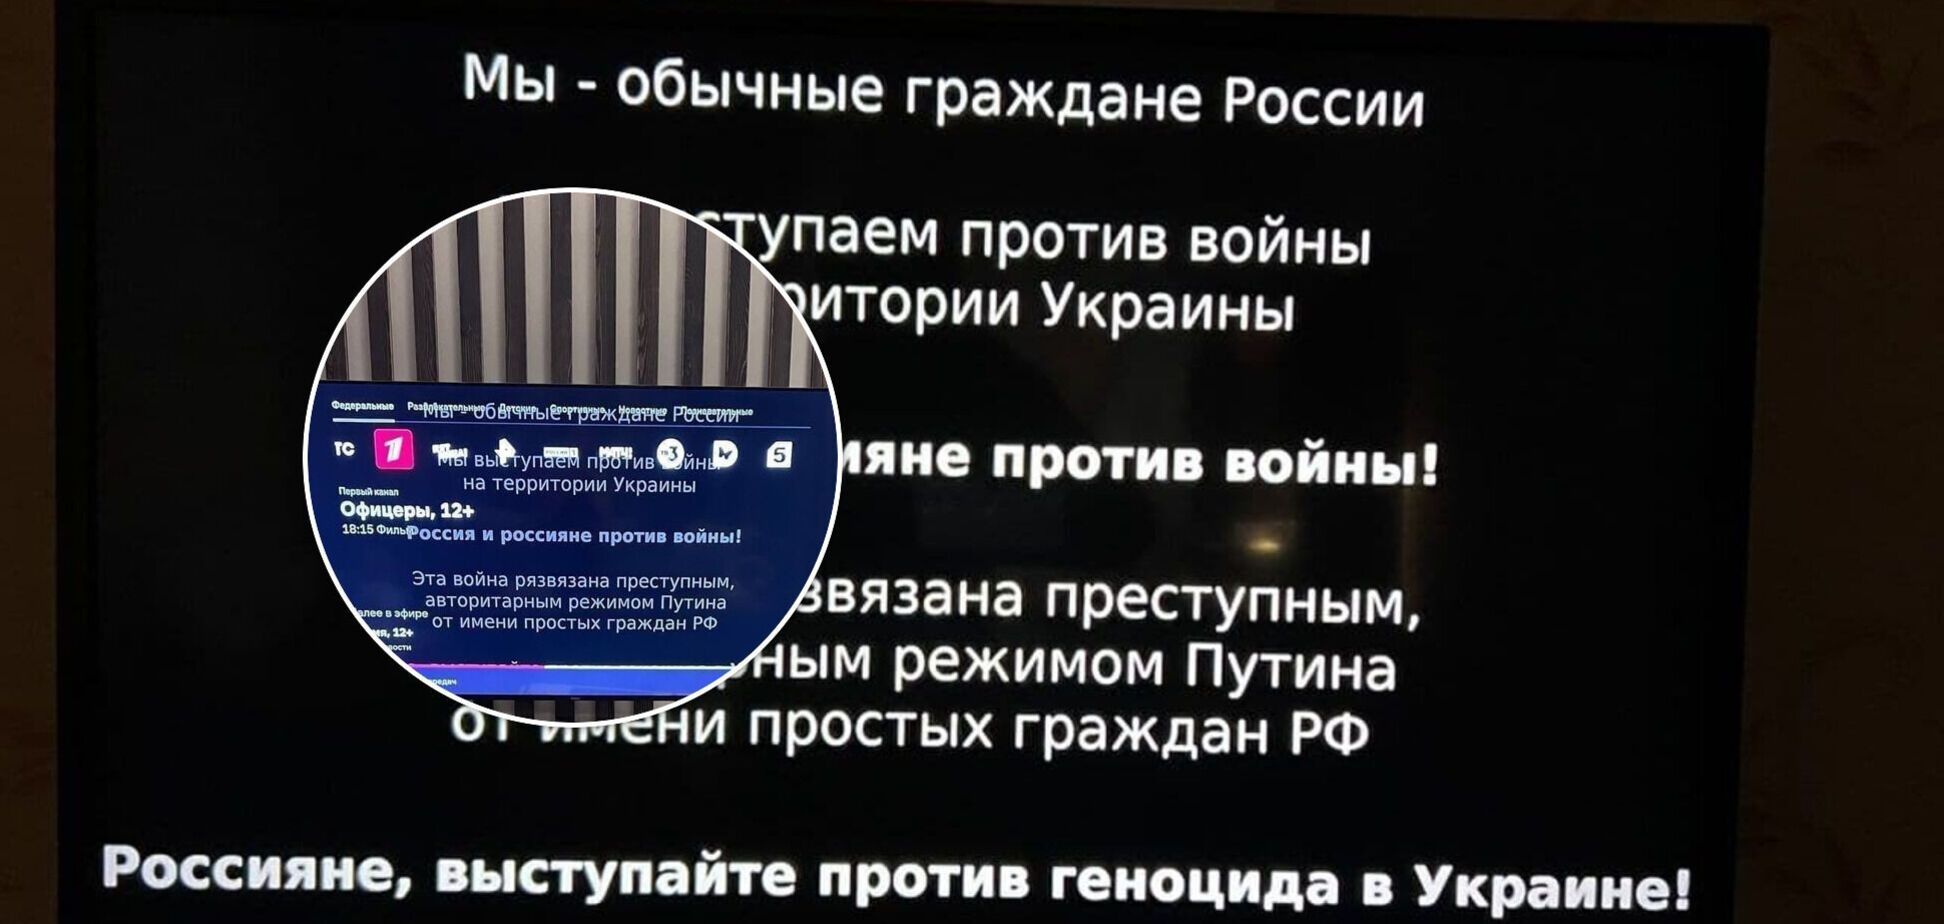 'Ця війна розв'язана злочинним режимом': на відеосервісах у РФ почали транслювати антивоєнну агітацію. Фото і відео